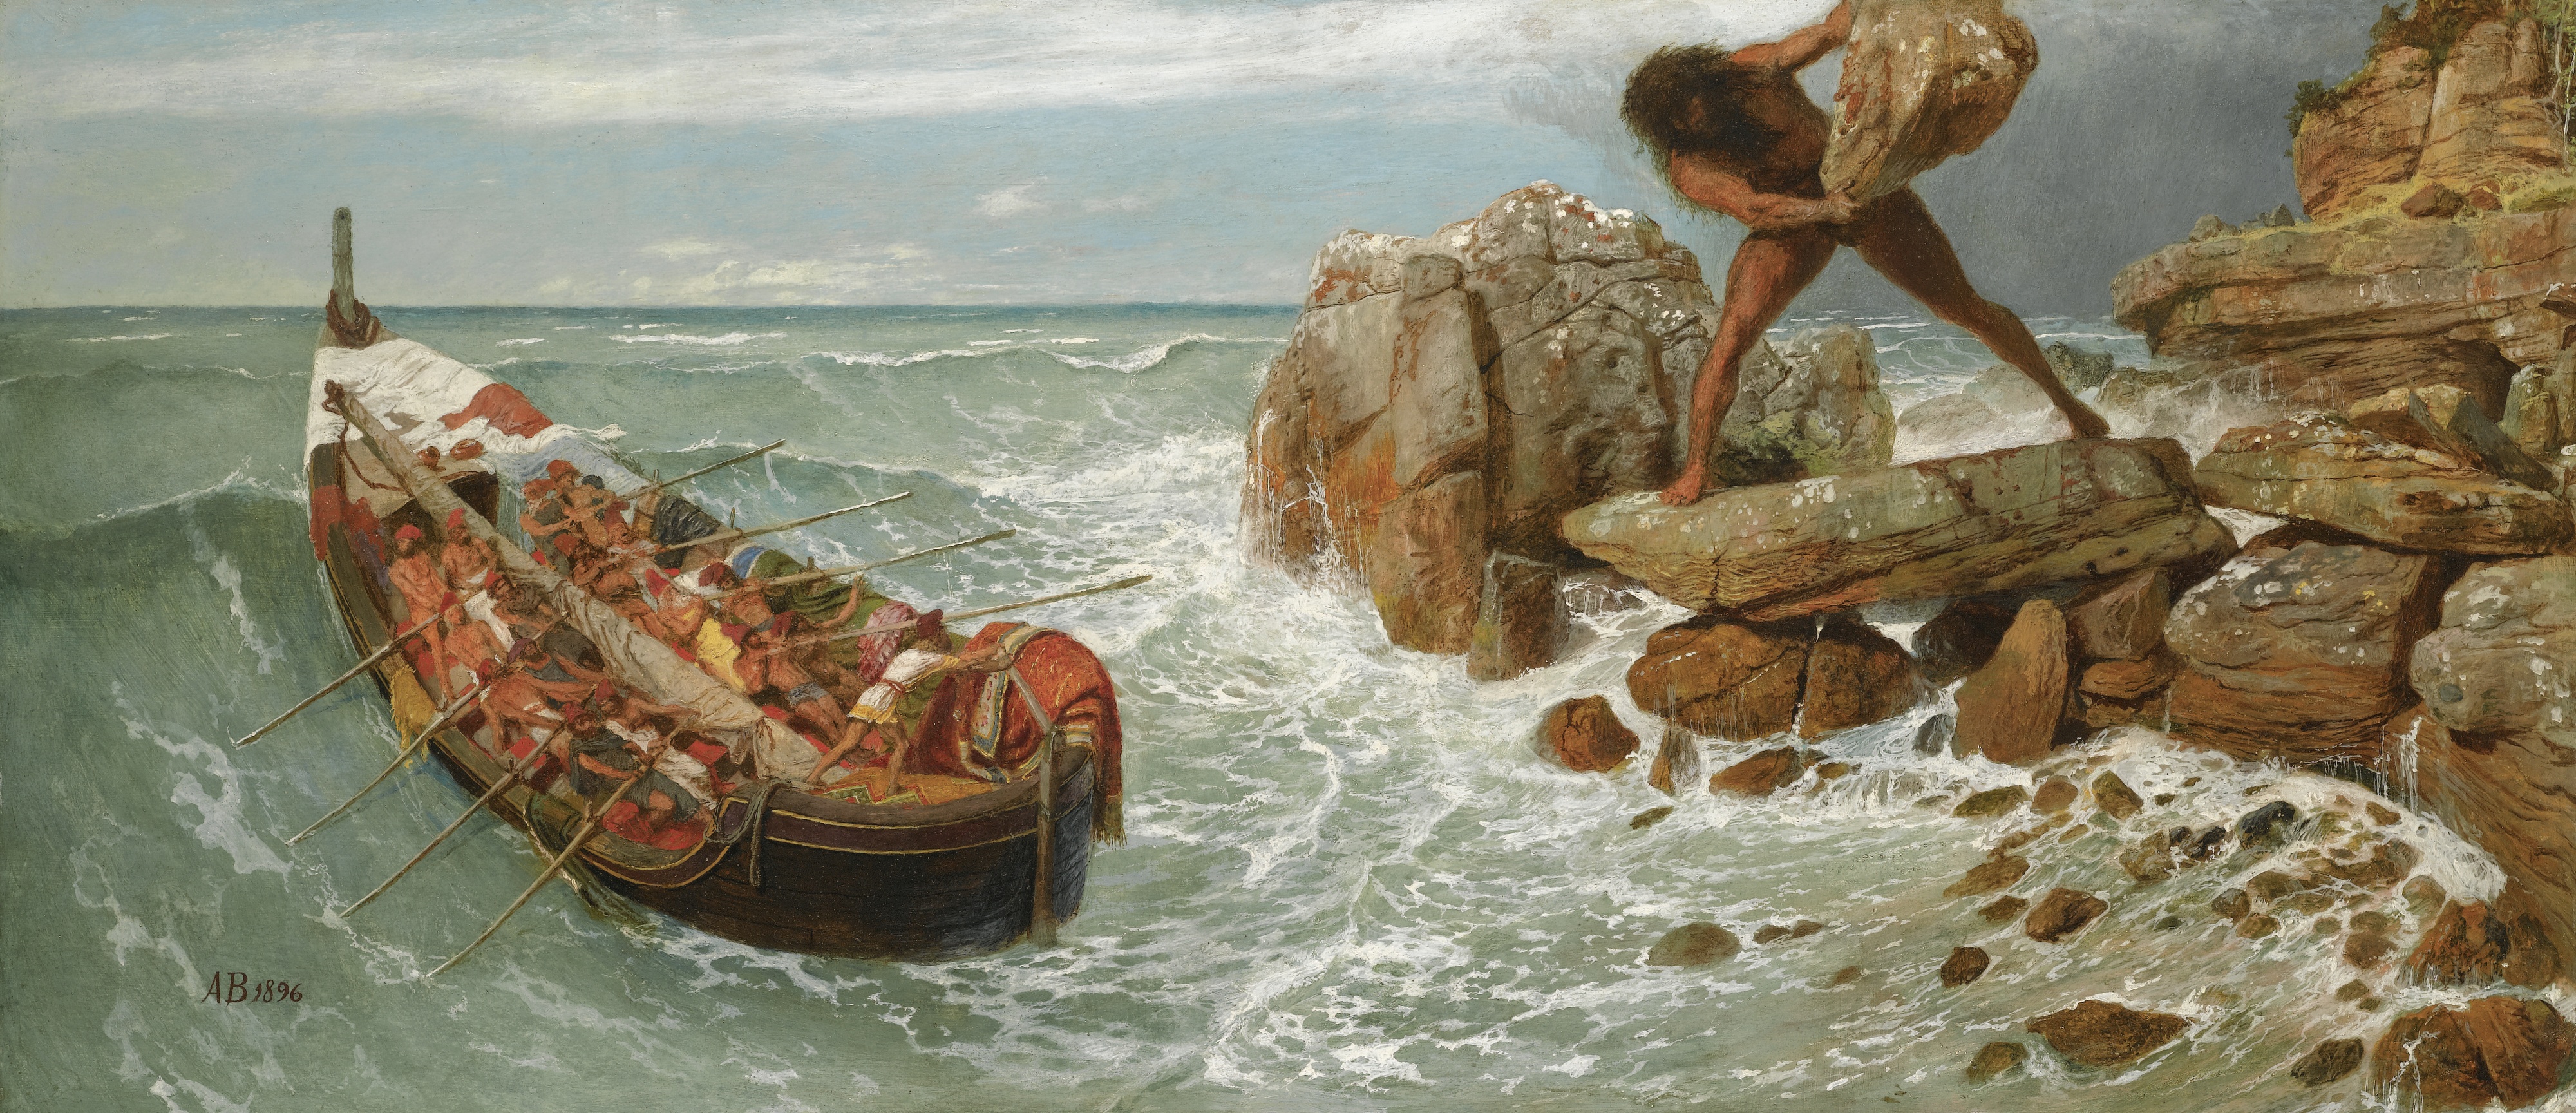 De reizen van Odysseus – Deel I – De reis naar huis